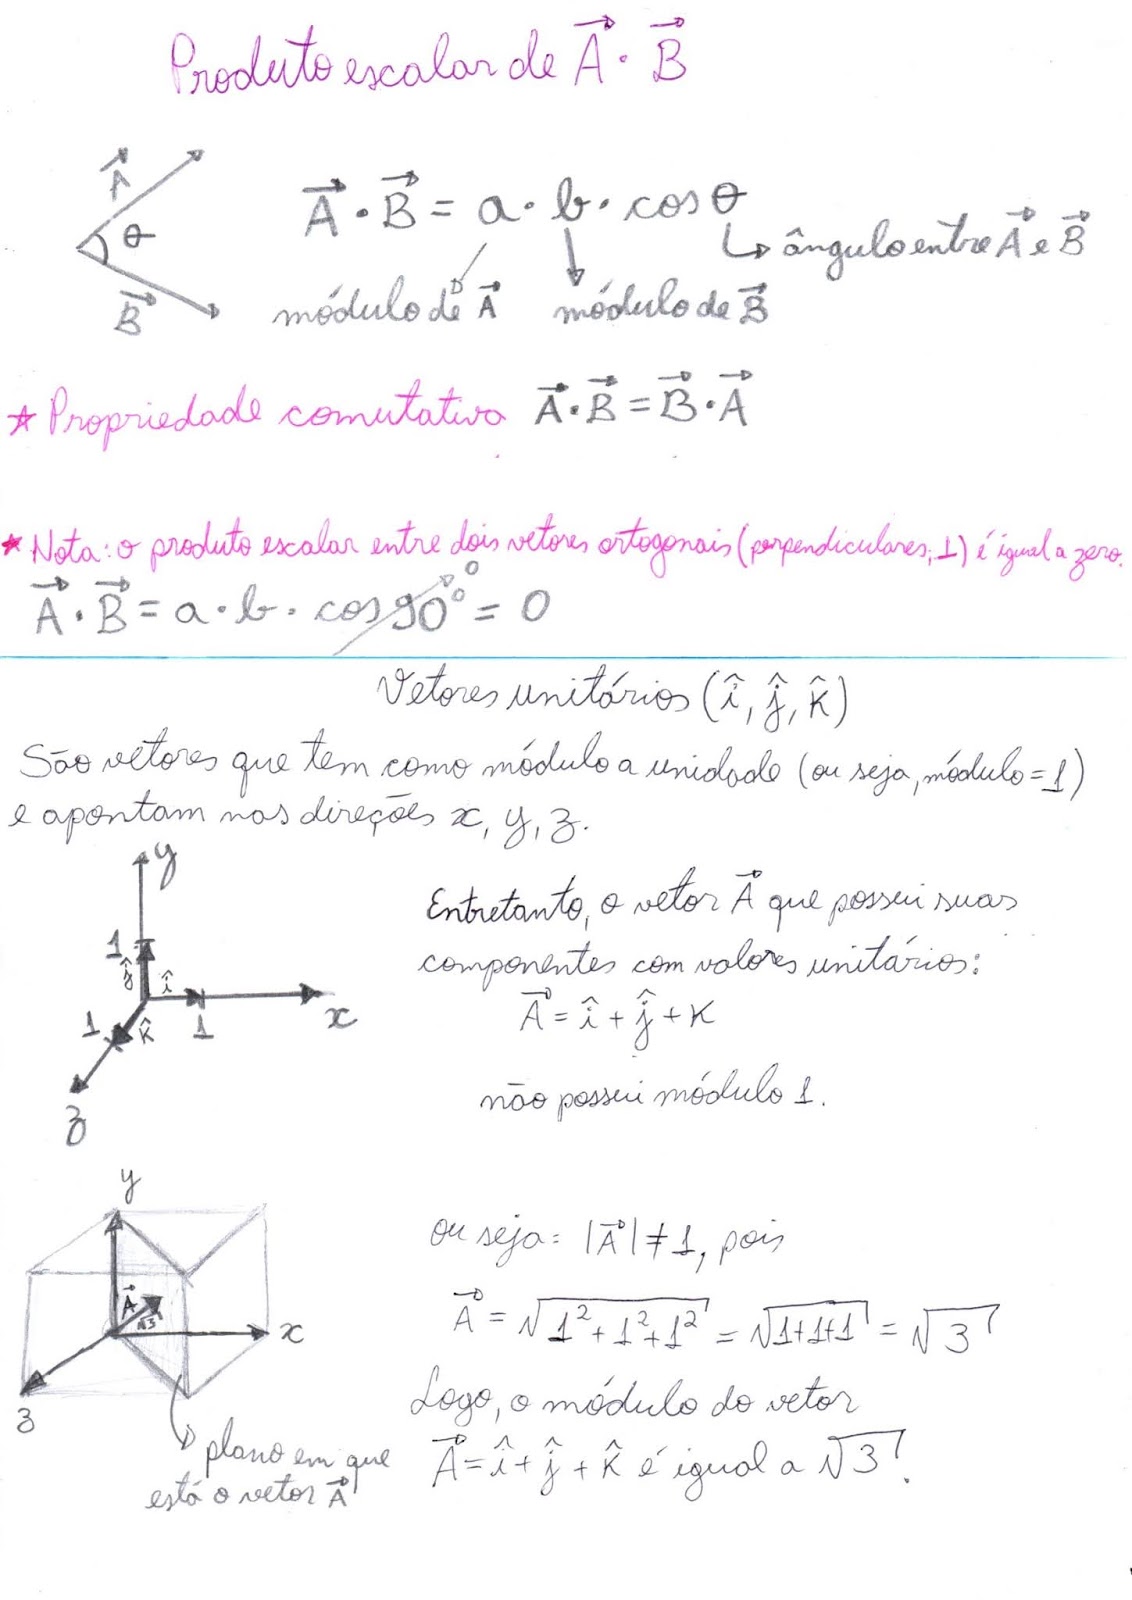 Incentivando A Educacao Fisica 1 Como Resolver Problemas De Vetores Modulo 3 E Teorema De Pitagoras Lei Dos Senos E Cossenos